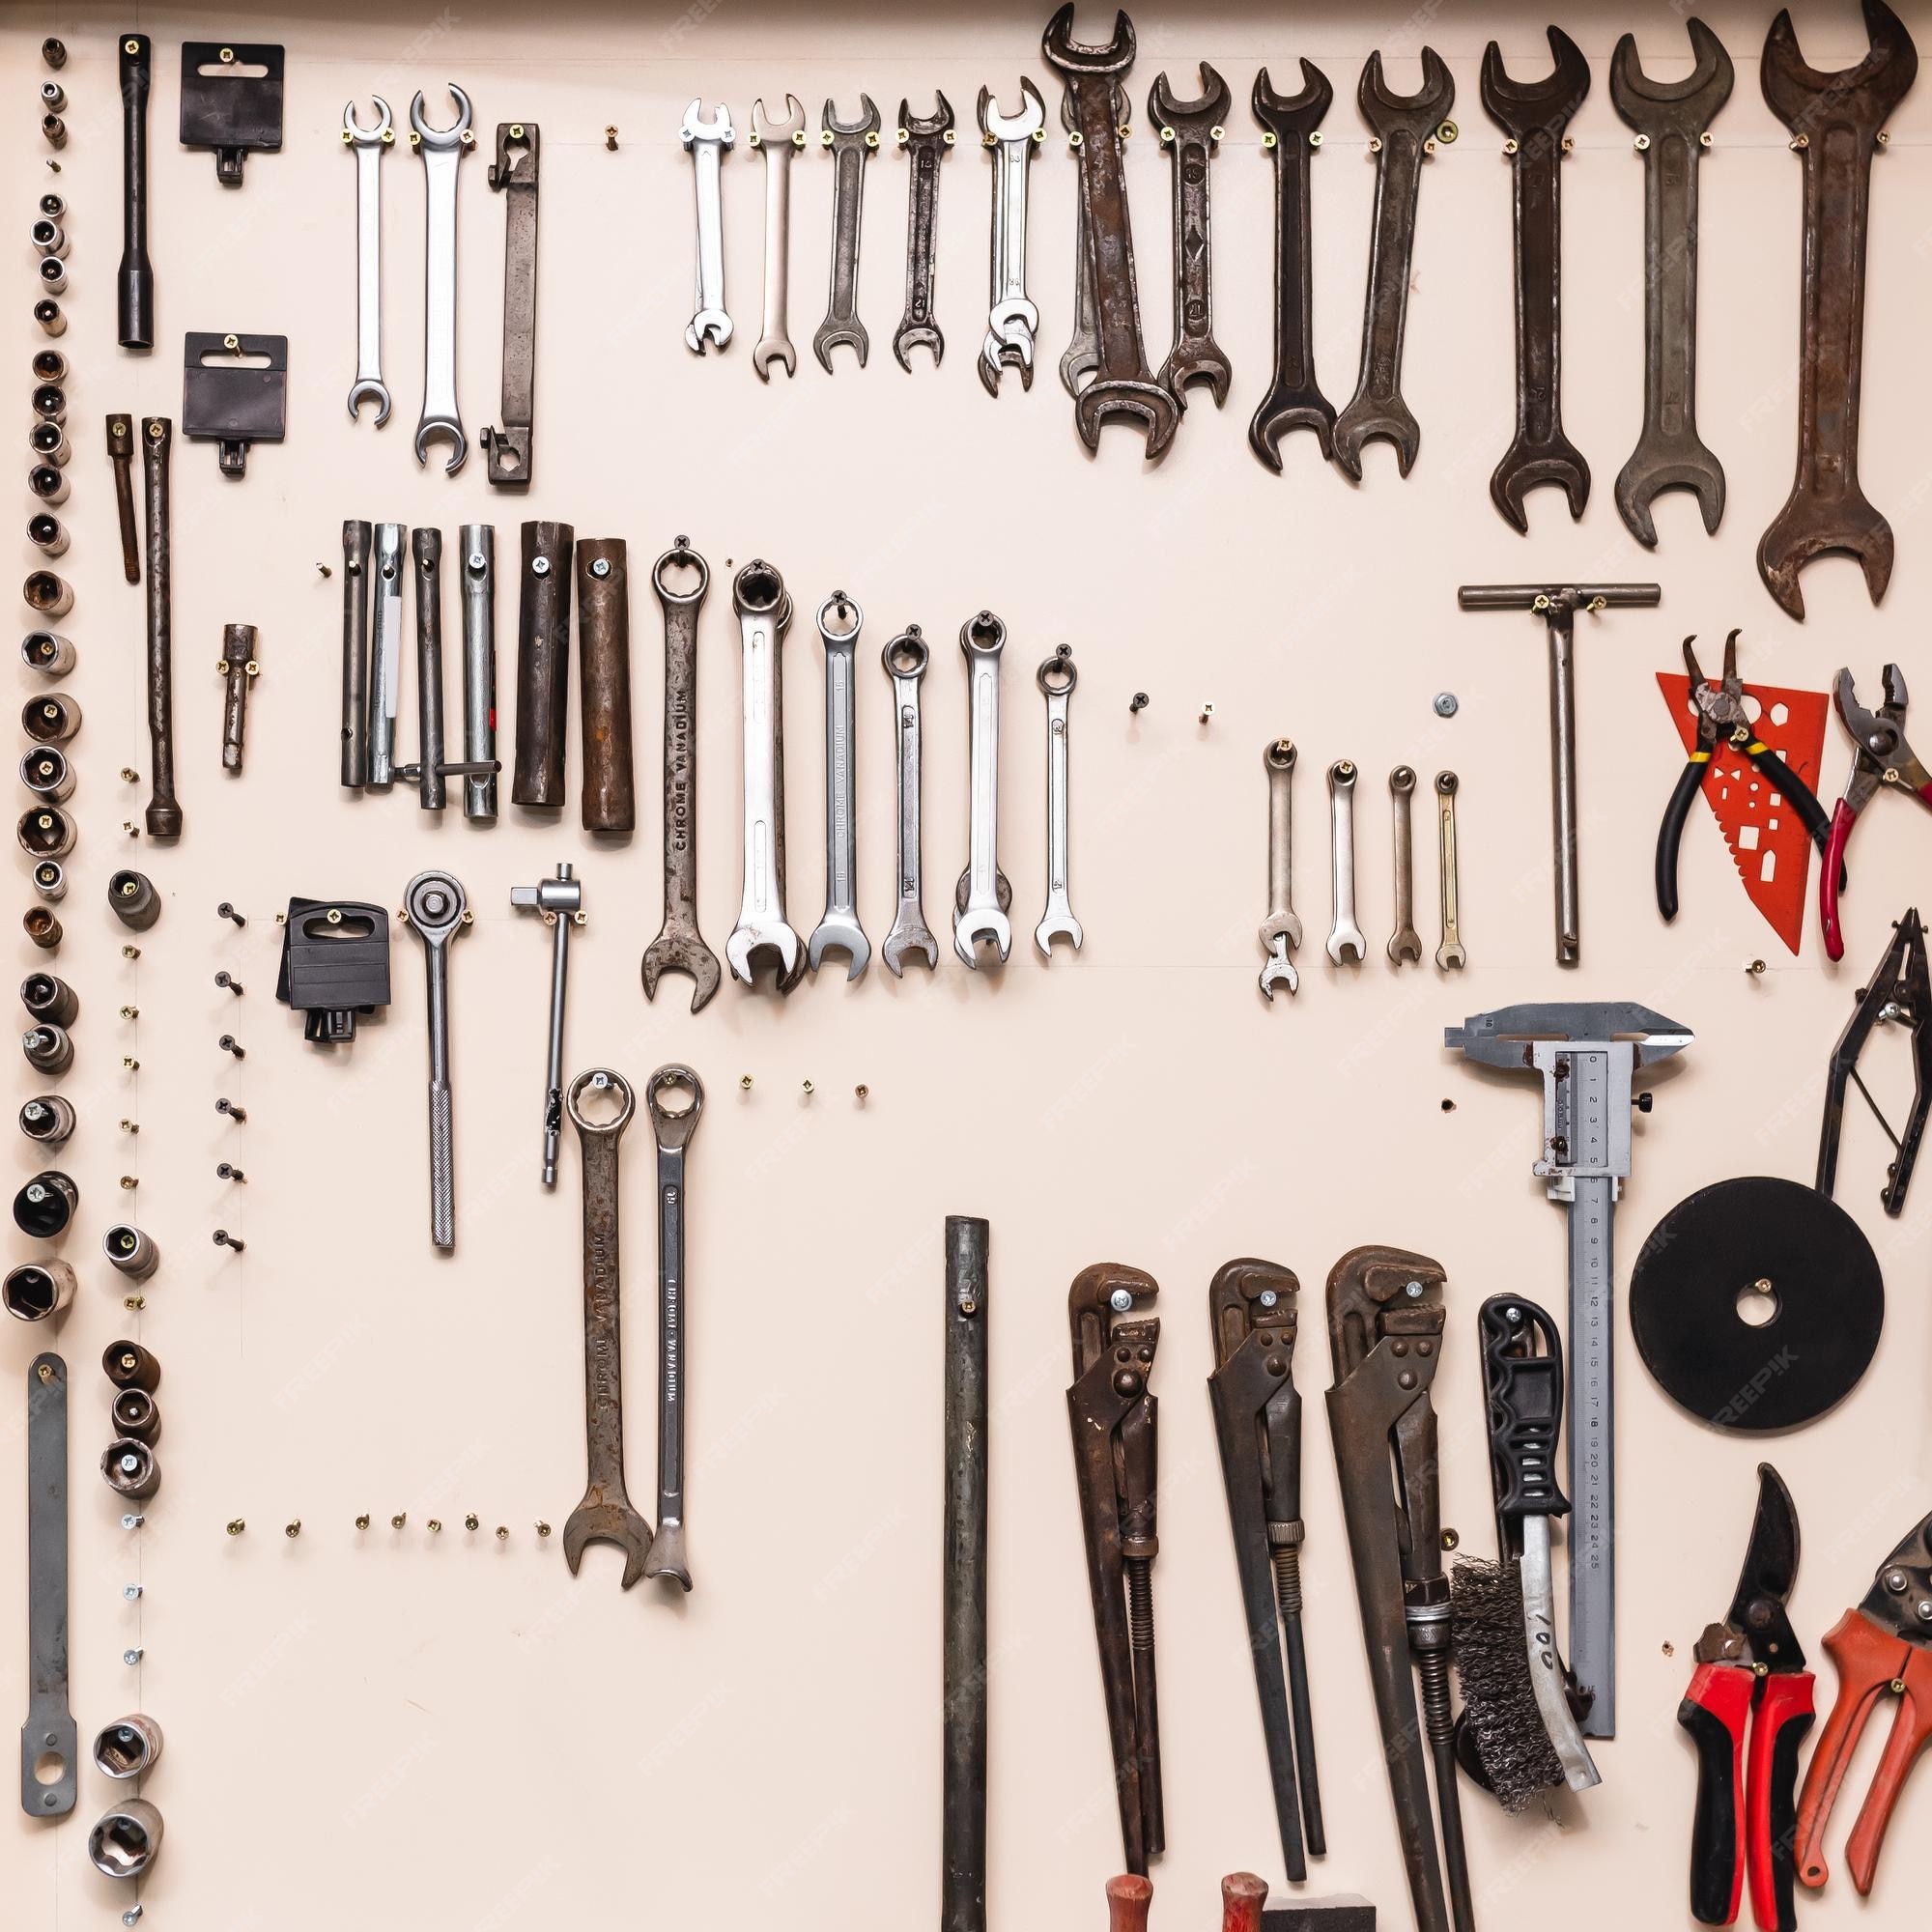 Almacenamiento de herramientas y organización de garaje organizadores para herramientas de garaje herramientas en la pared del taller estante de herramientas contra la pared Foto Premium